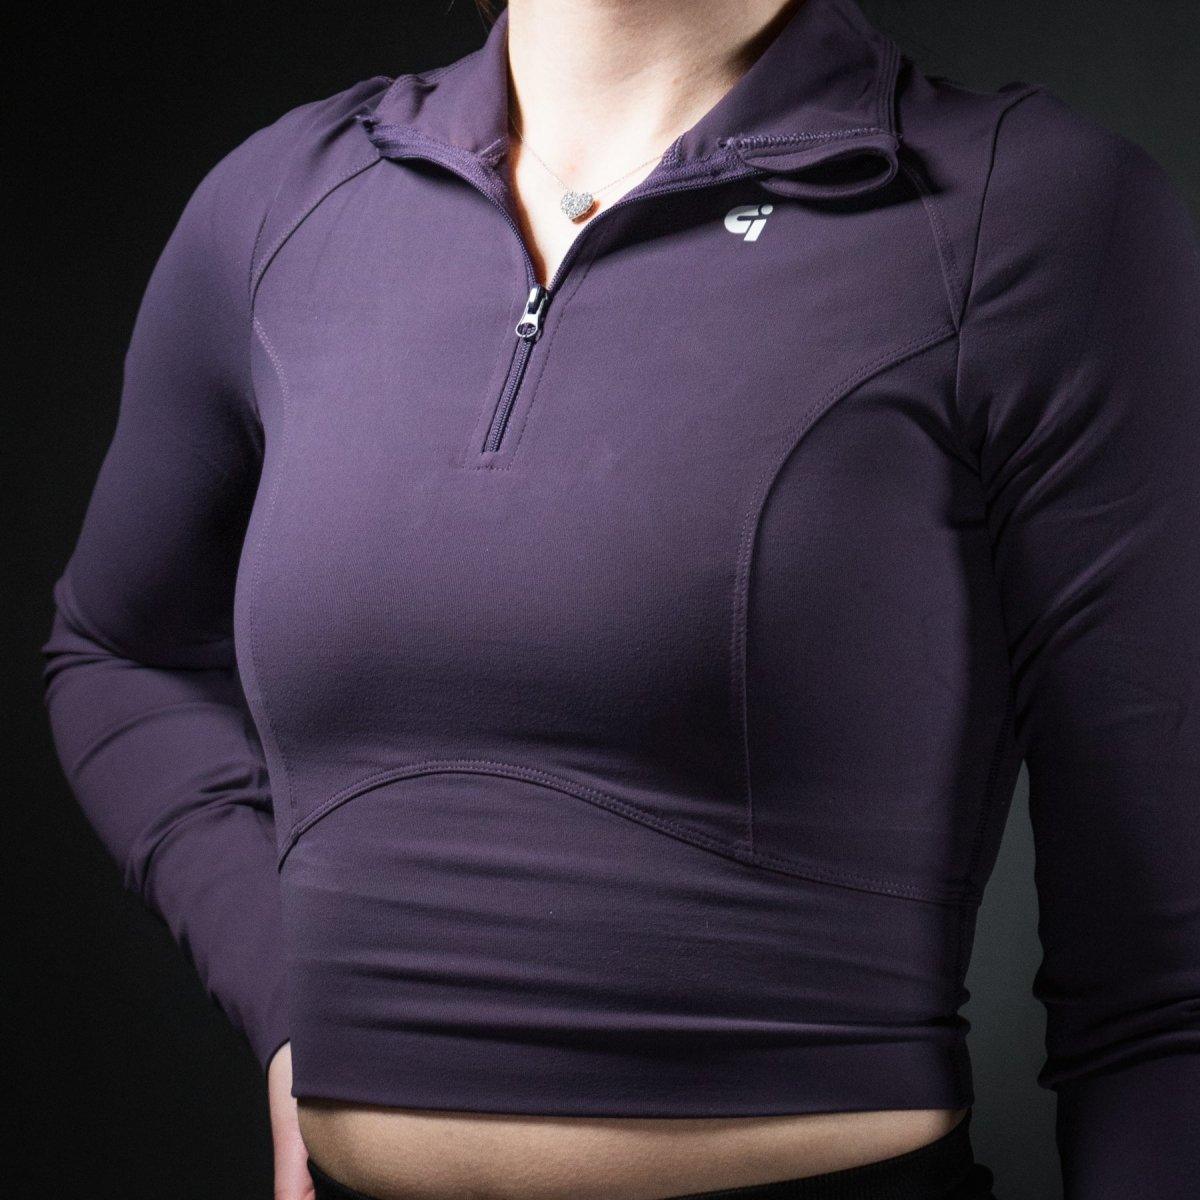 Genesis Tech Fleece 1/4 Zip Crop Top - IronGrind Athletics - activewear - gymshark - alphalete